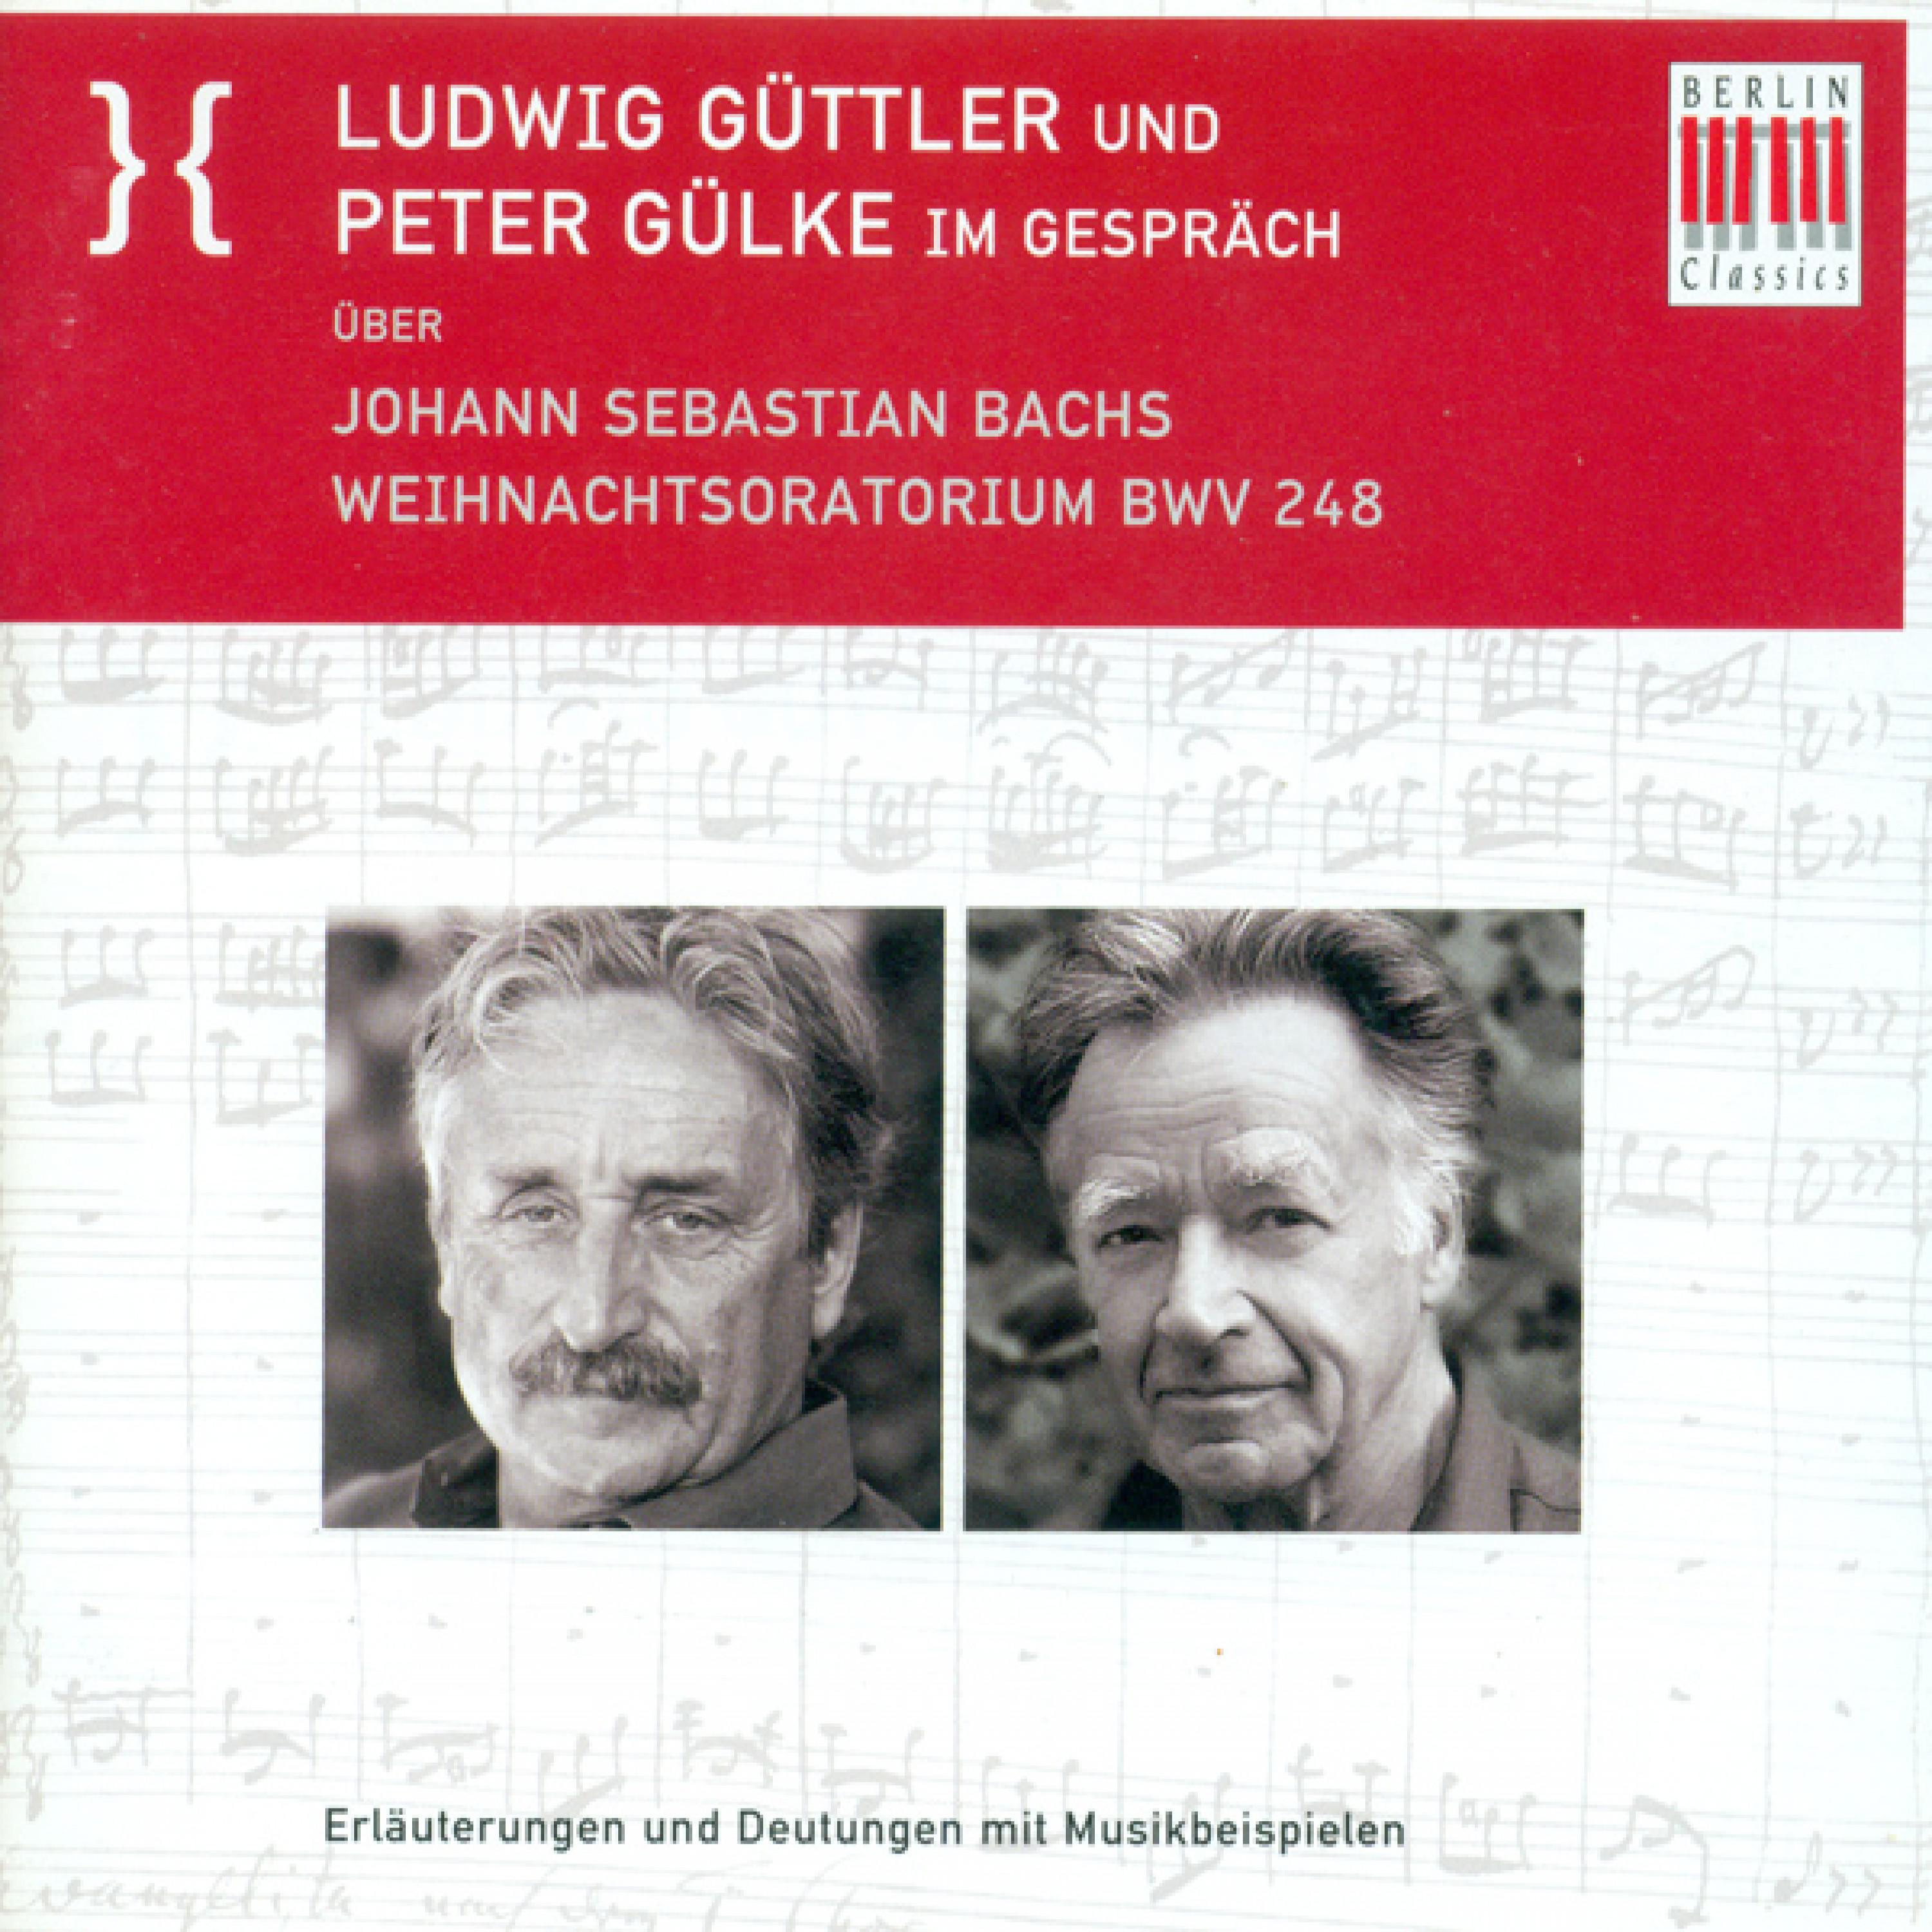 Ludwig Guttler und Peter Gulke Im Gesprach uber Johann Sebastian Bach's Weihnachtsoratorium BWV 248: Die 3. Person als Zuege